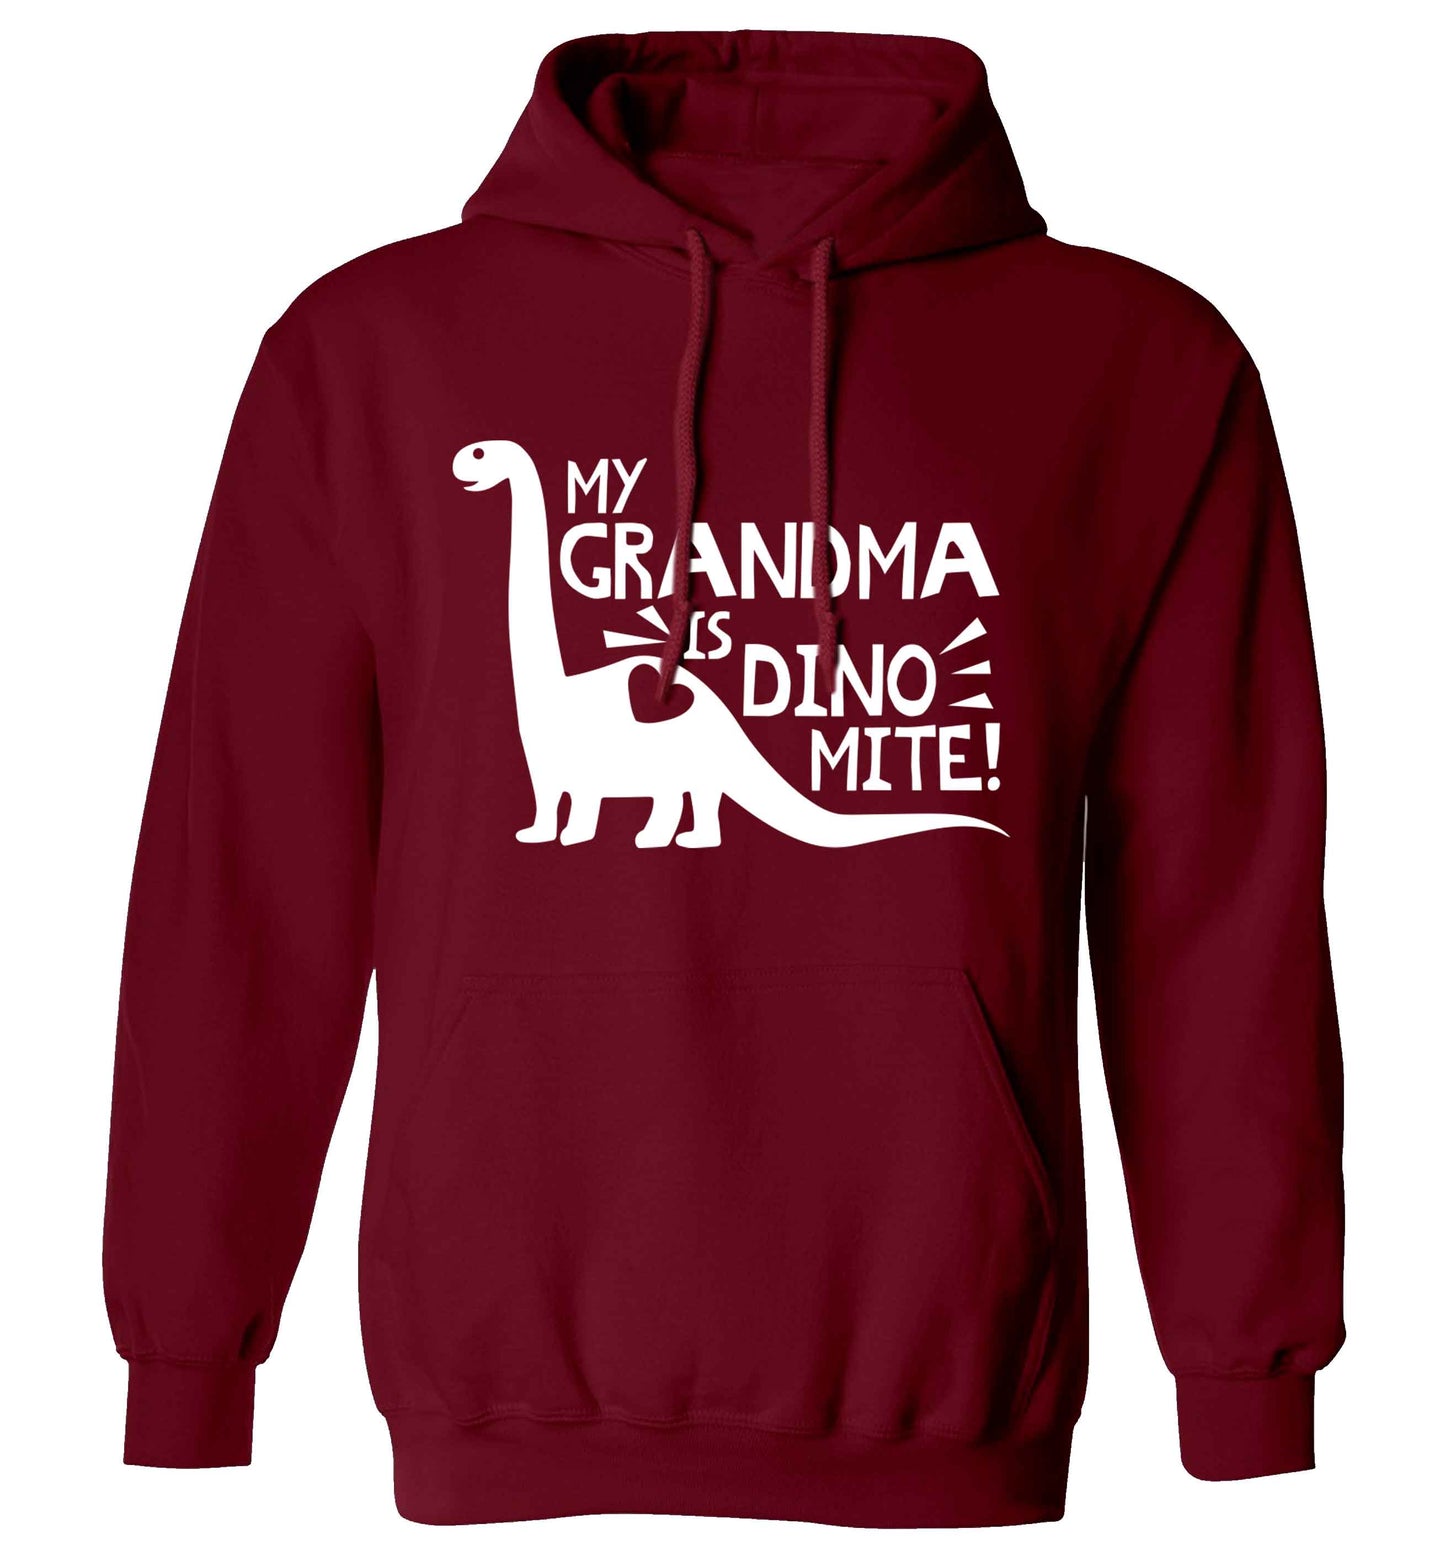 My grandma is dinomite! adults unisex maroon hoodie 2XL